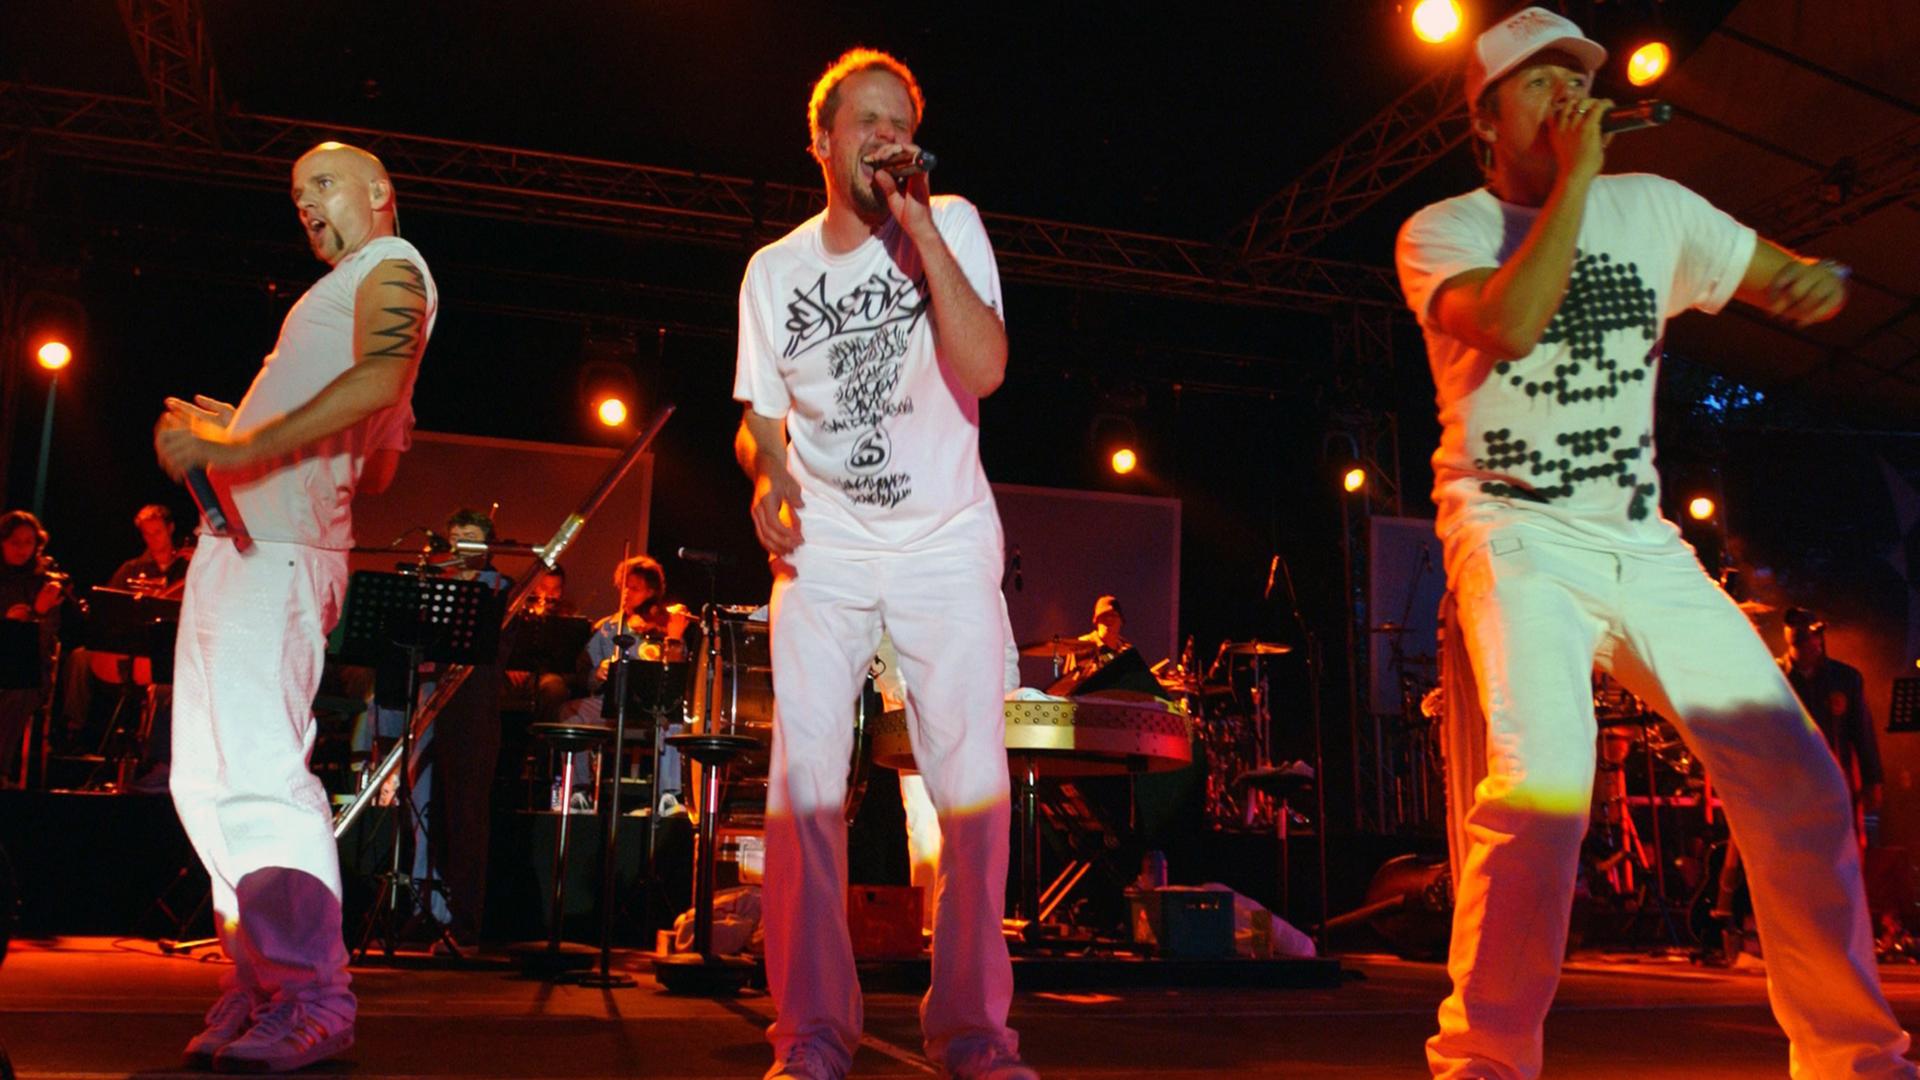 Thomas D. (v. l.), Smudo und Michael Beck (alias DJ Hausmarke) von der Stuttgarter Hip-Hop-Band "Die Fantastischen Vier", aufgenommen 2003 im Kölner Tanzbrunnen